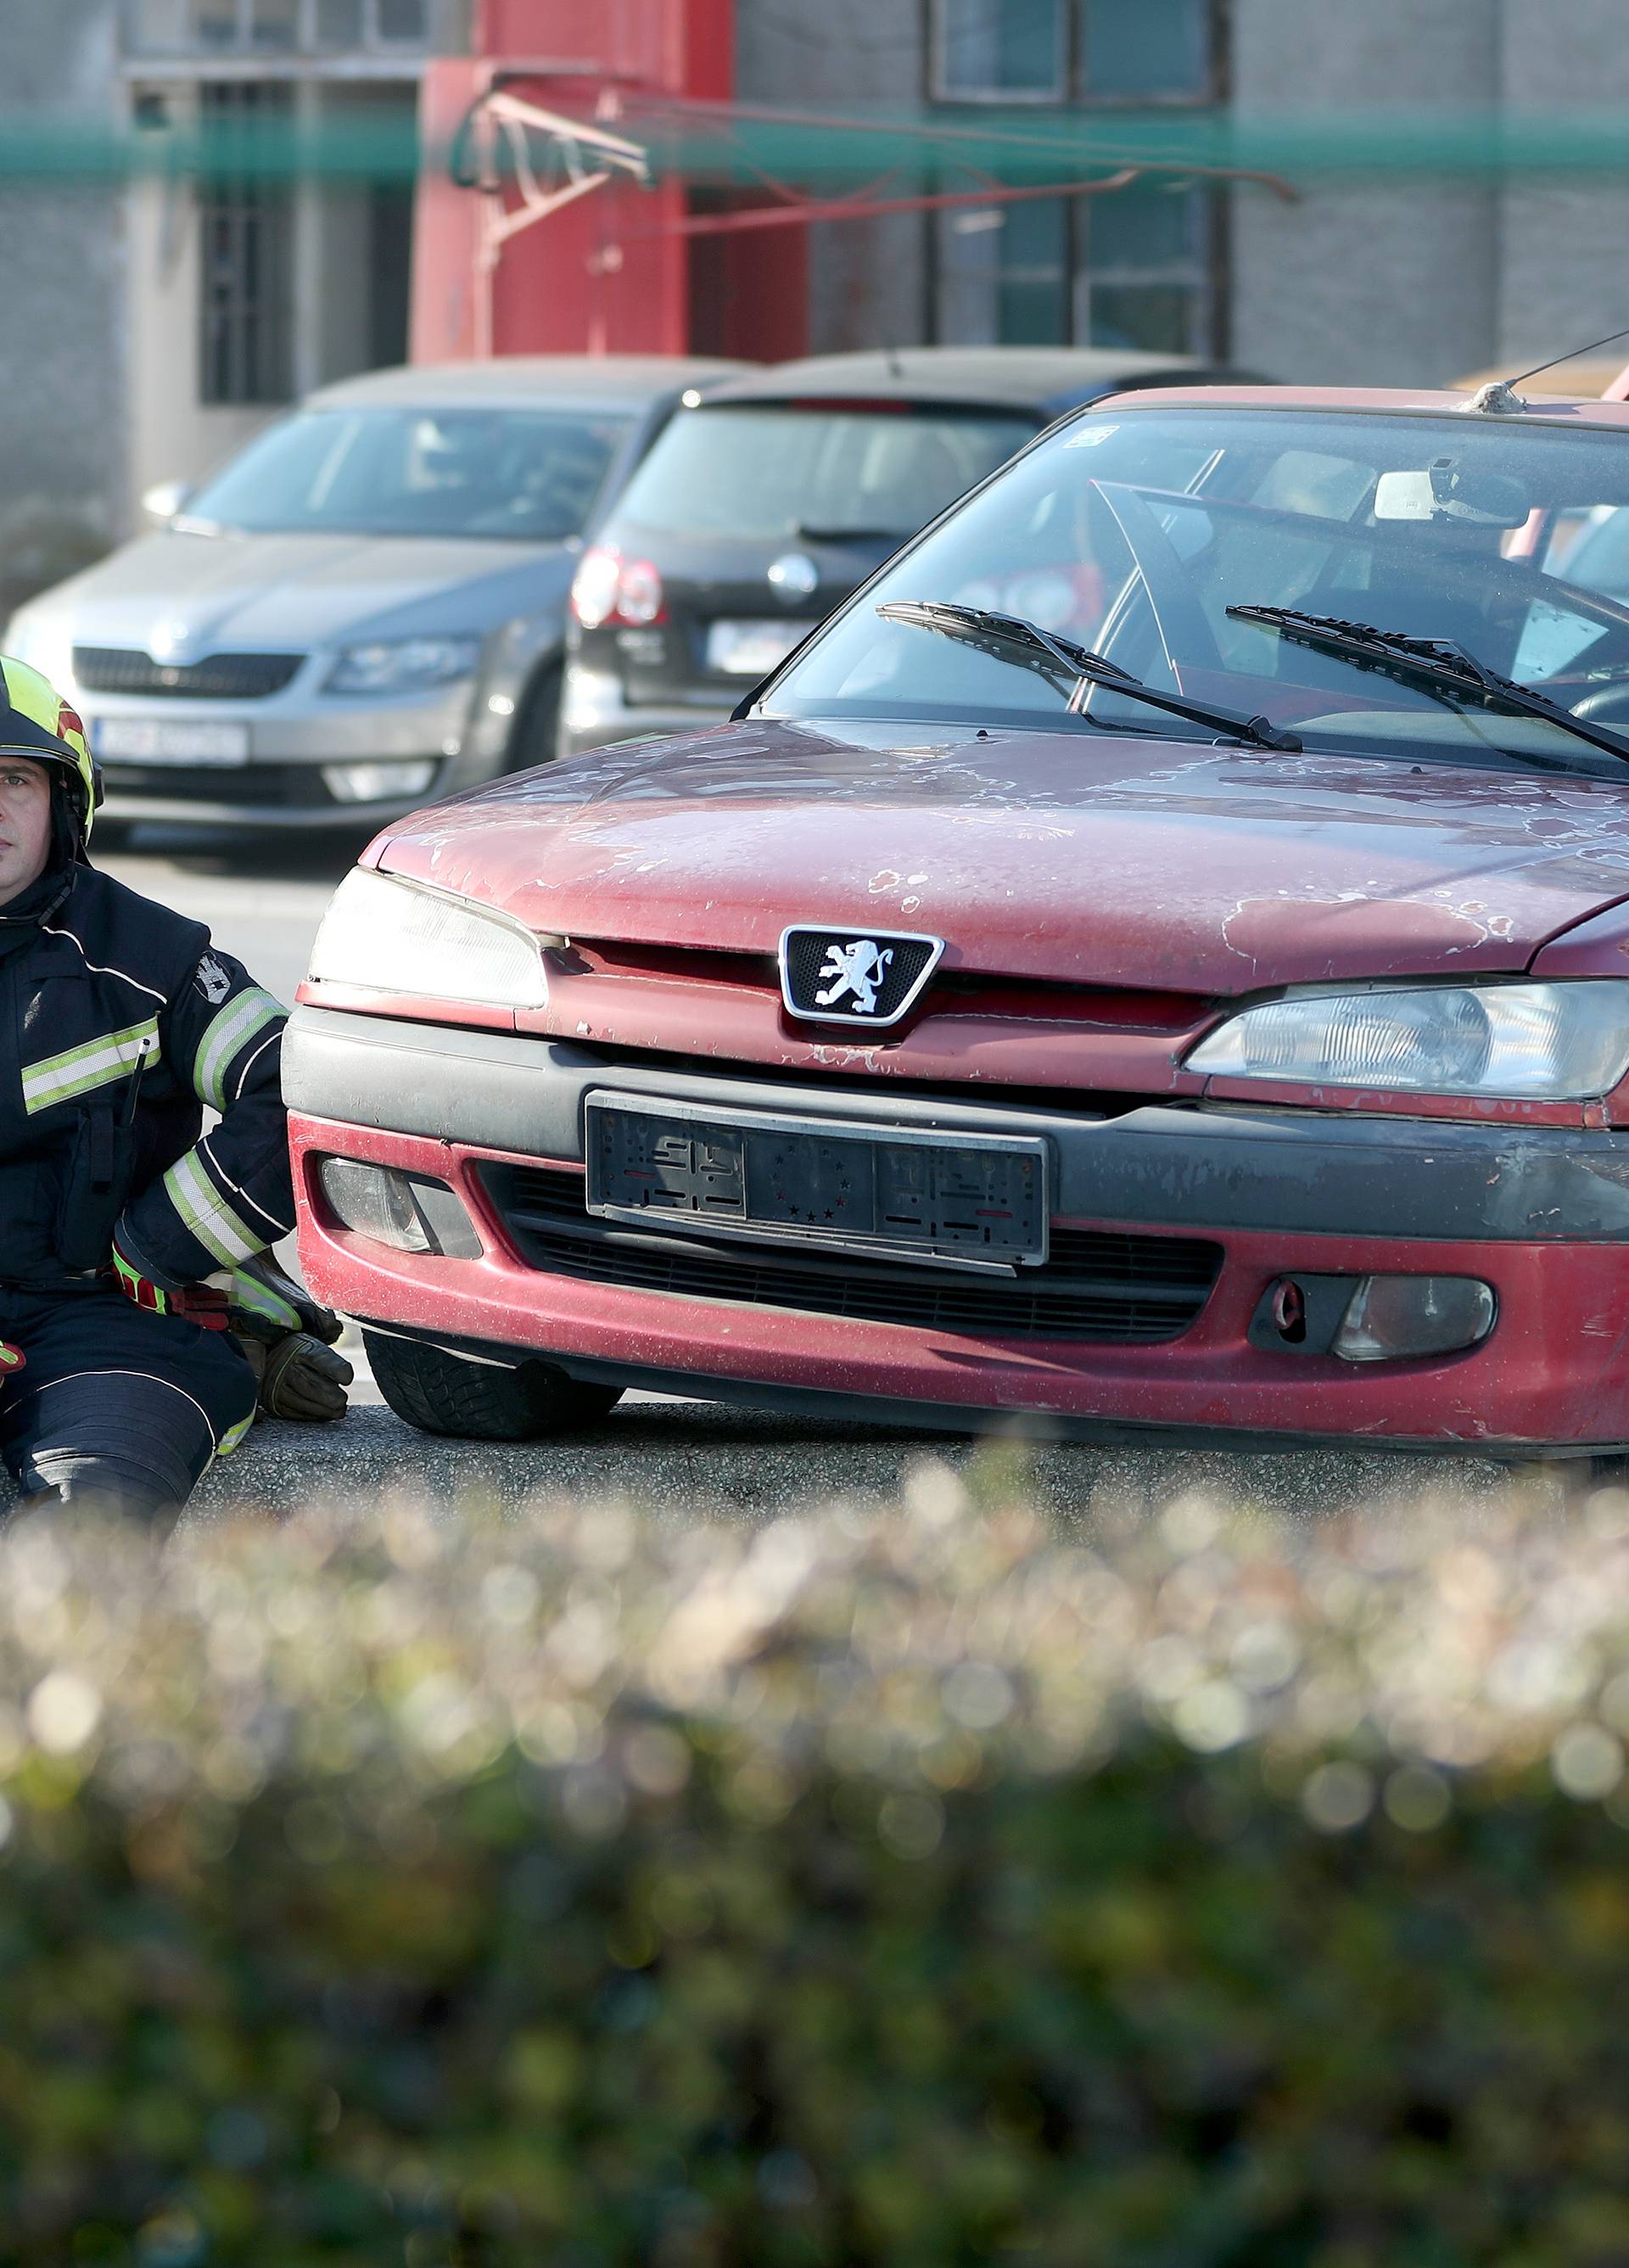 Provjerili smo kako vatrogasci spašavaju unesrećene iz vozila